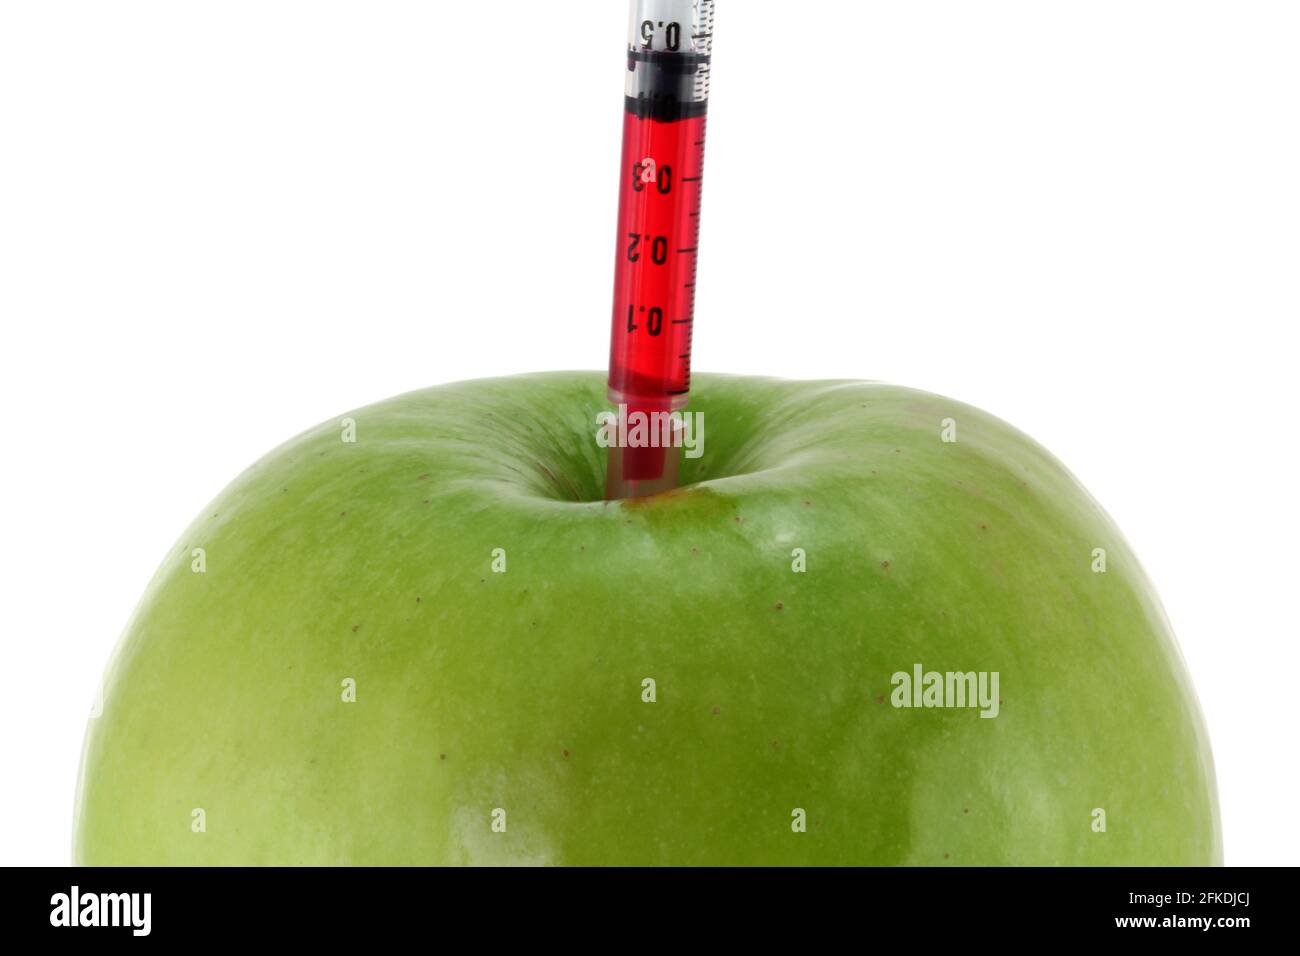 Foto conceptual de la modificación genética - Líquido rojo inyectando a una manzana verde Foto de stock